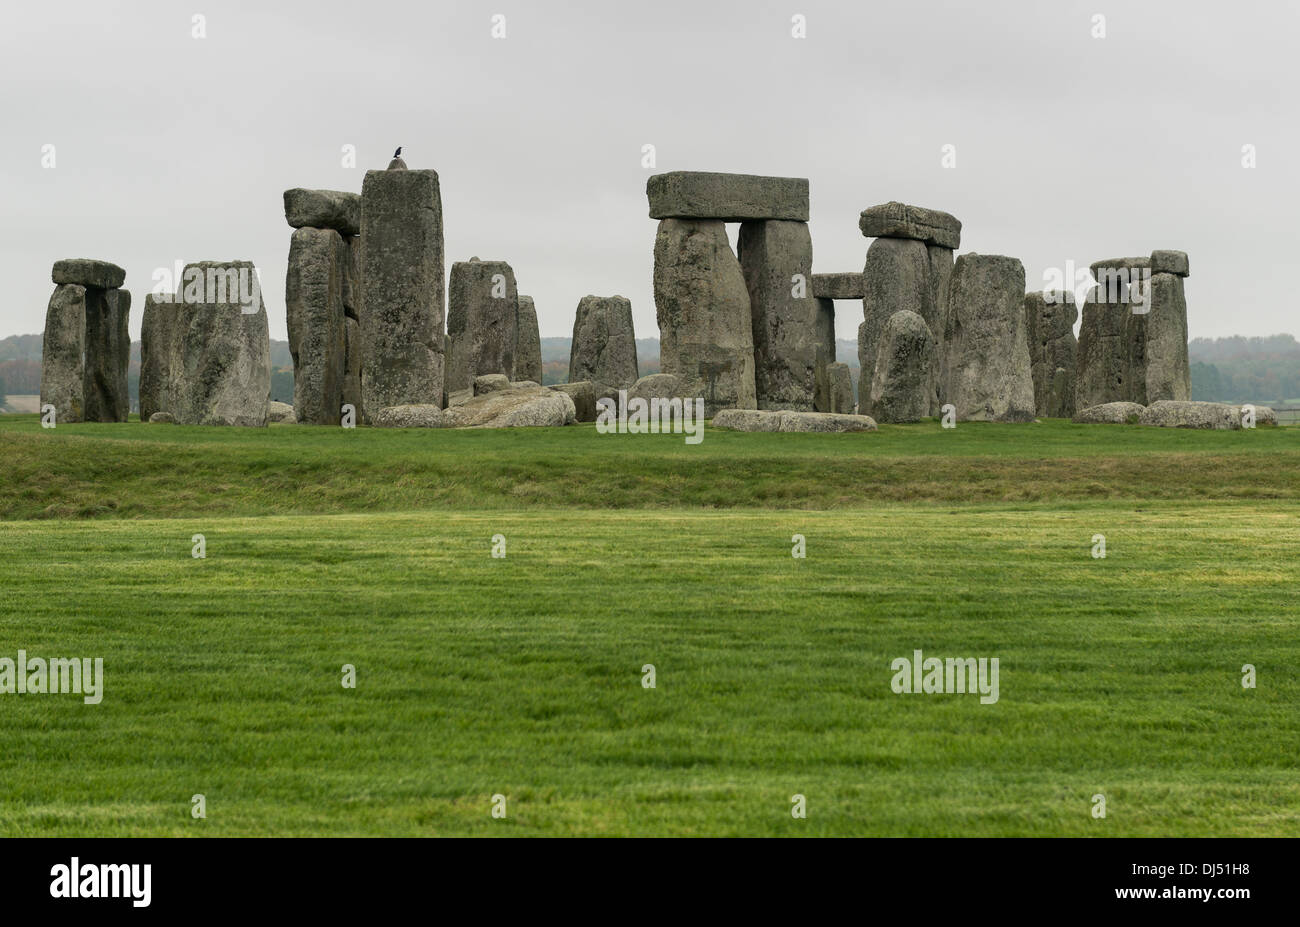 Stonehenge ancient monument Stock Photo